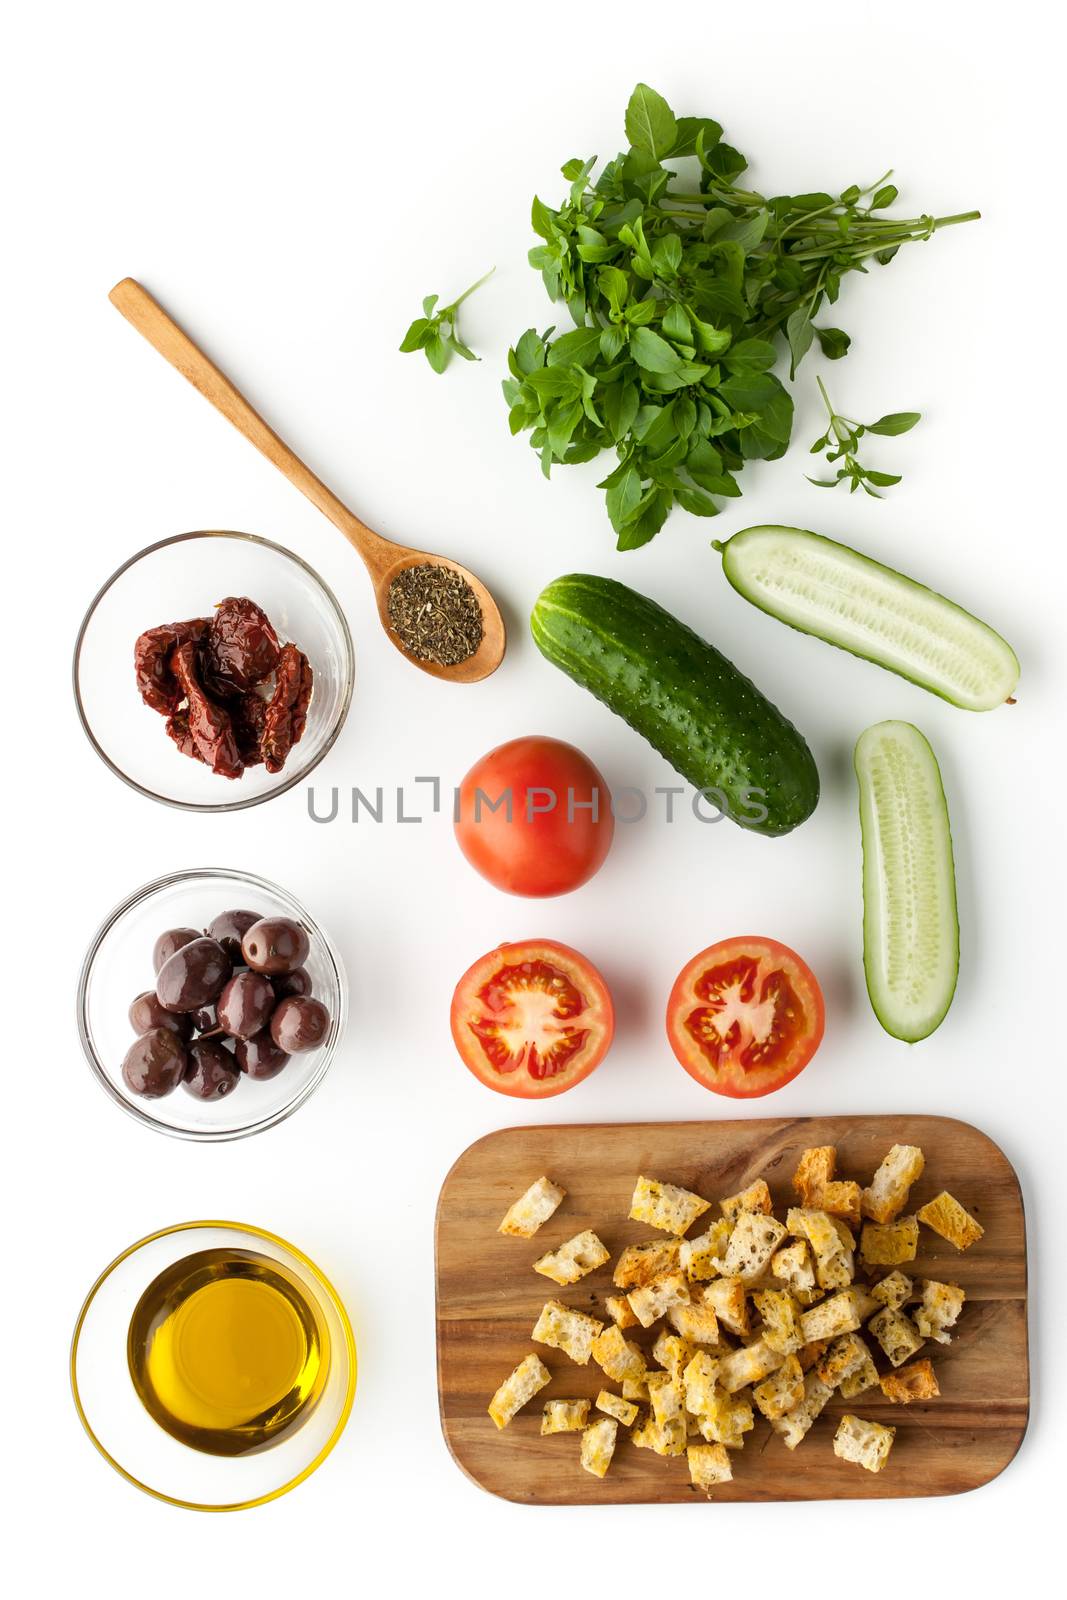 Ingredients for panzanella salad by Deniskarpenkov